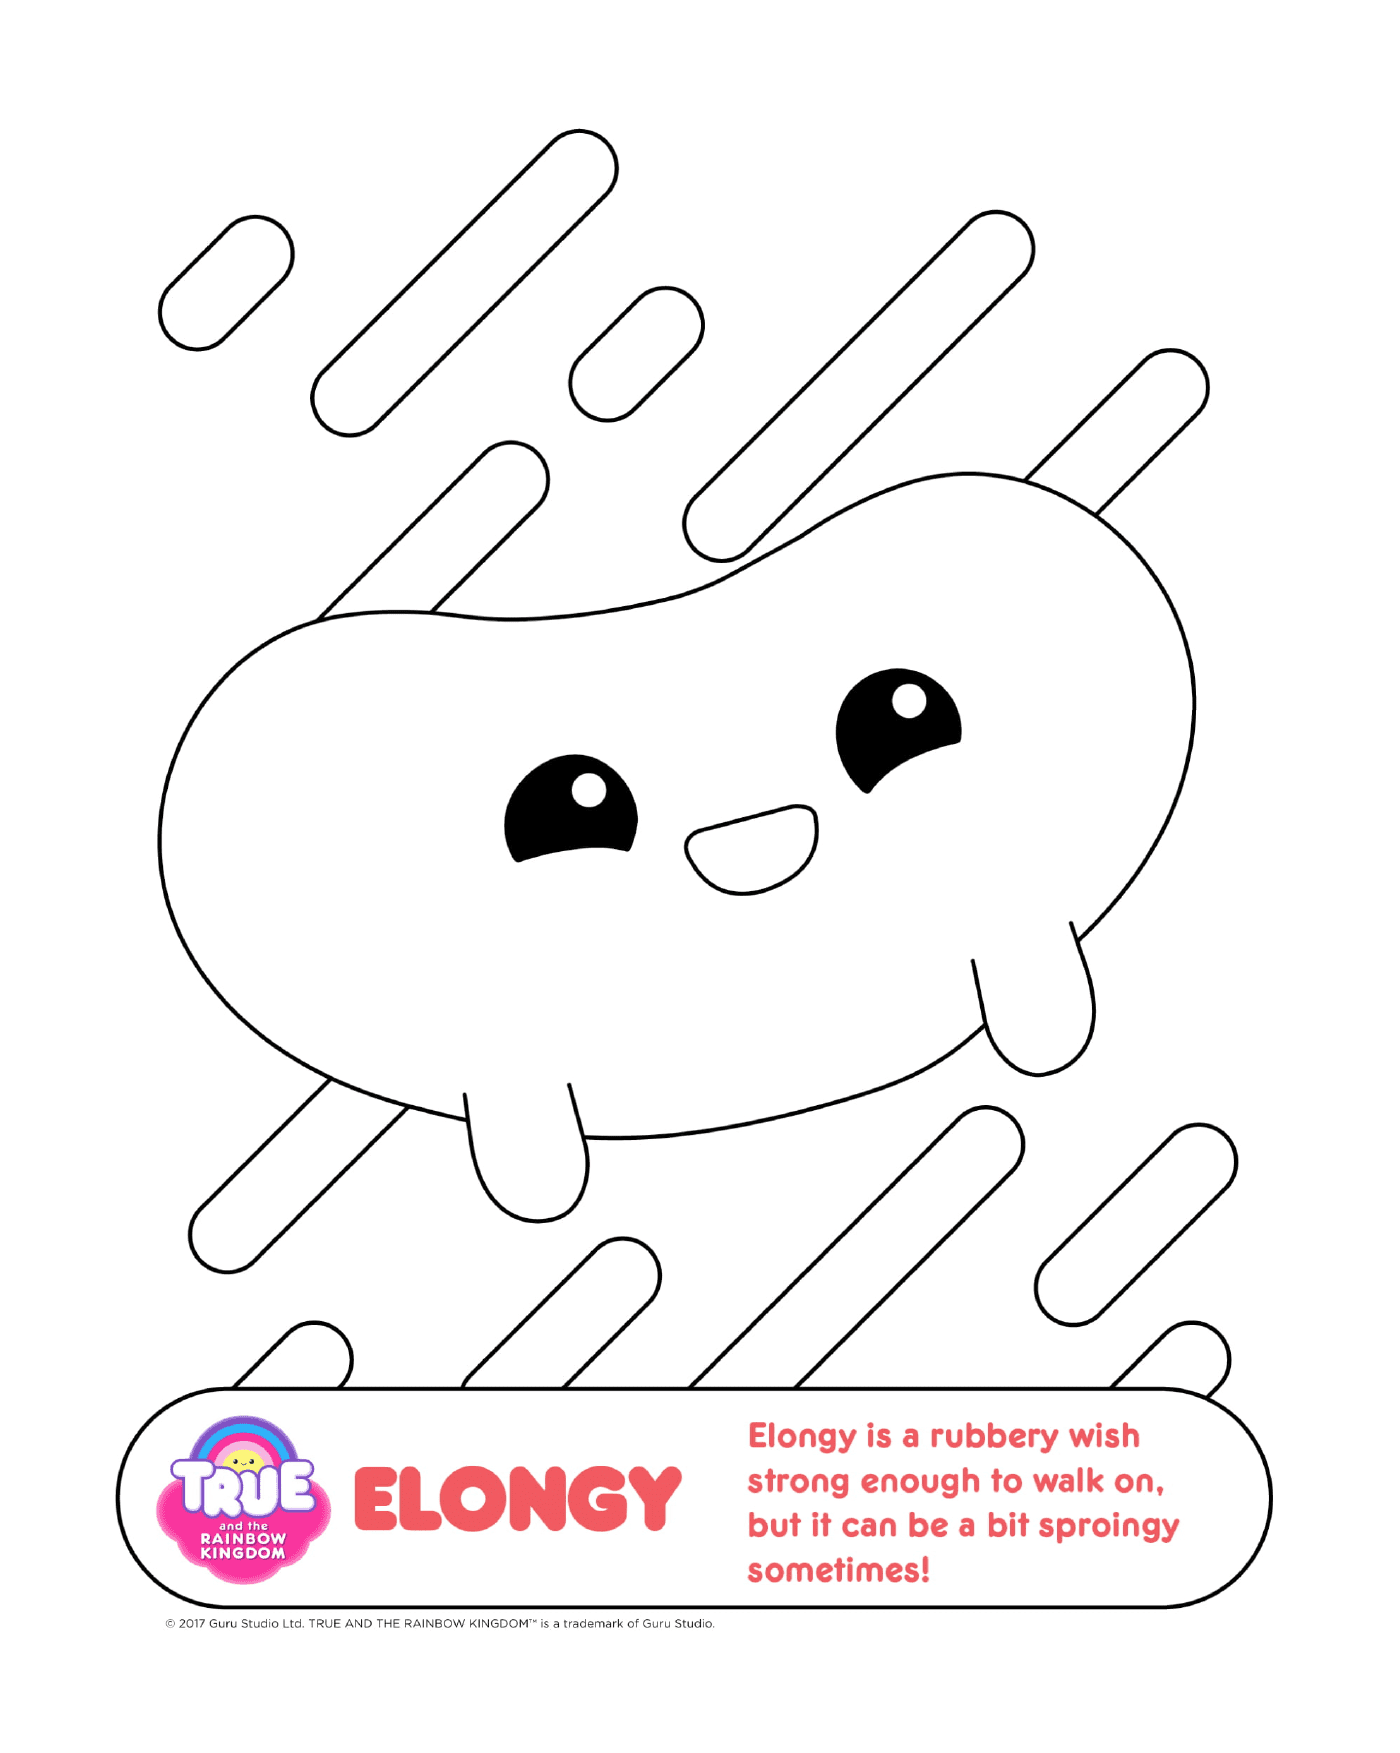  Elongy, a smiling cloud 